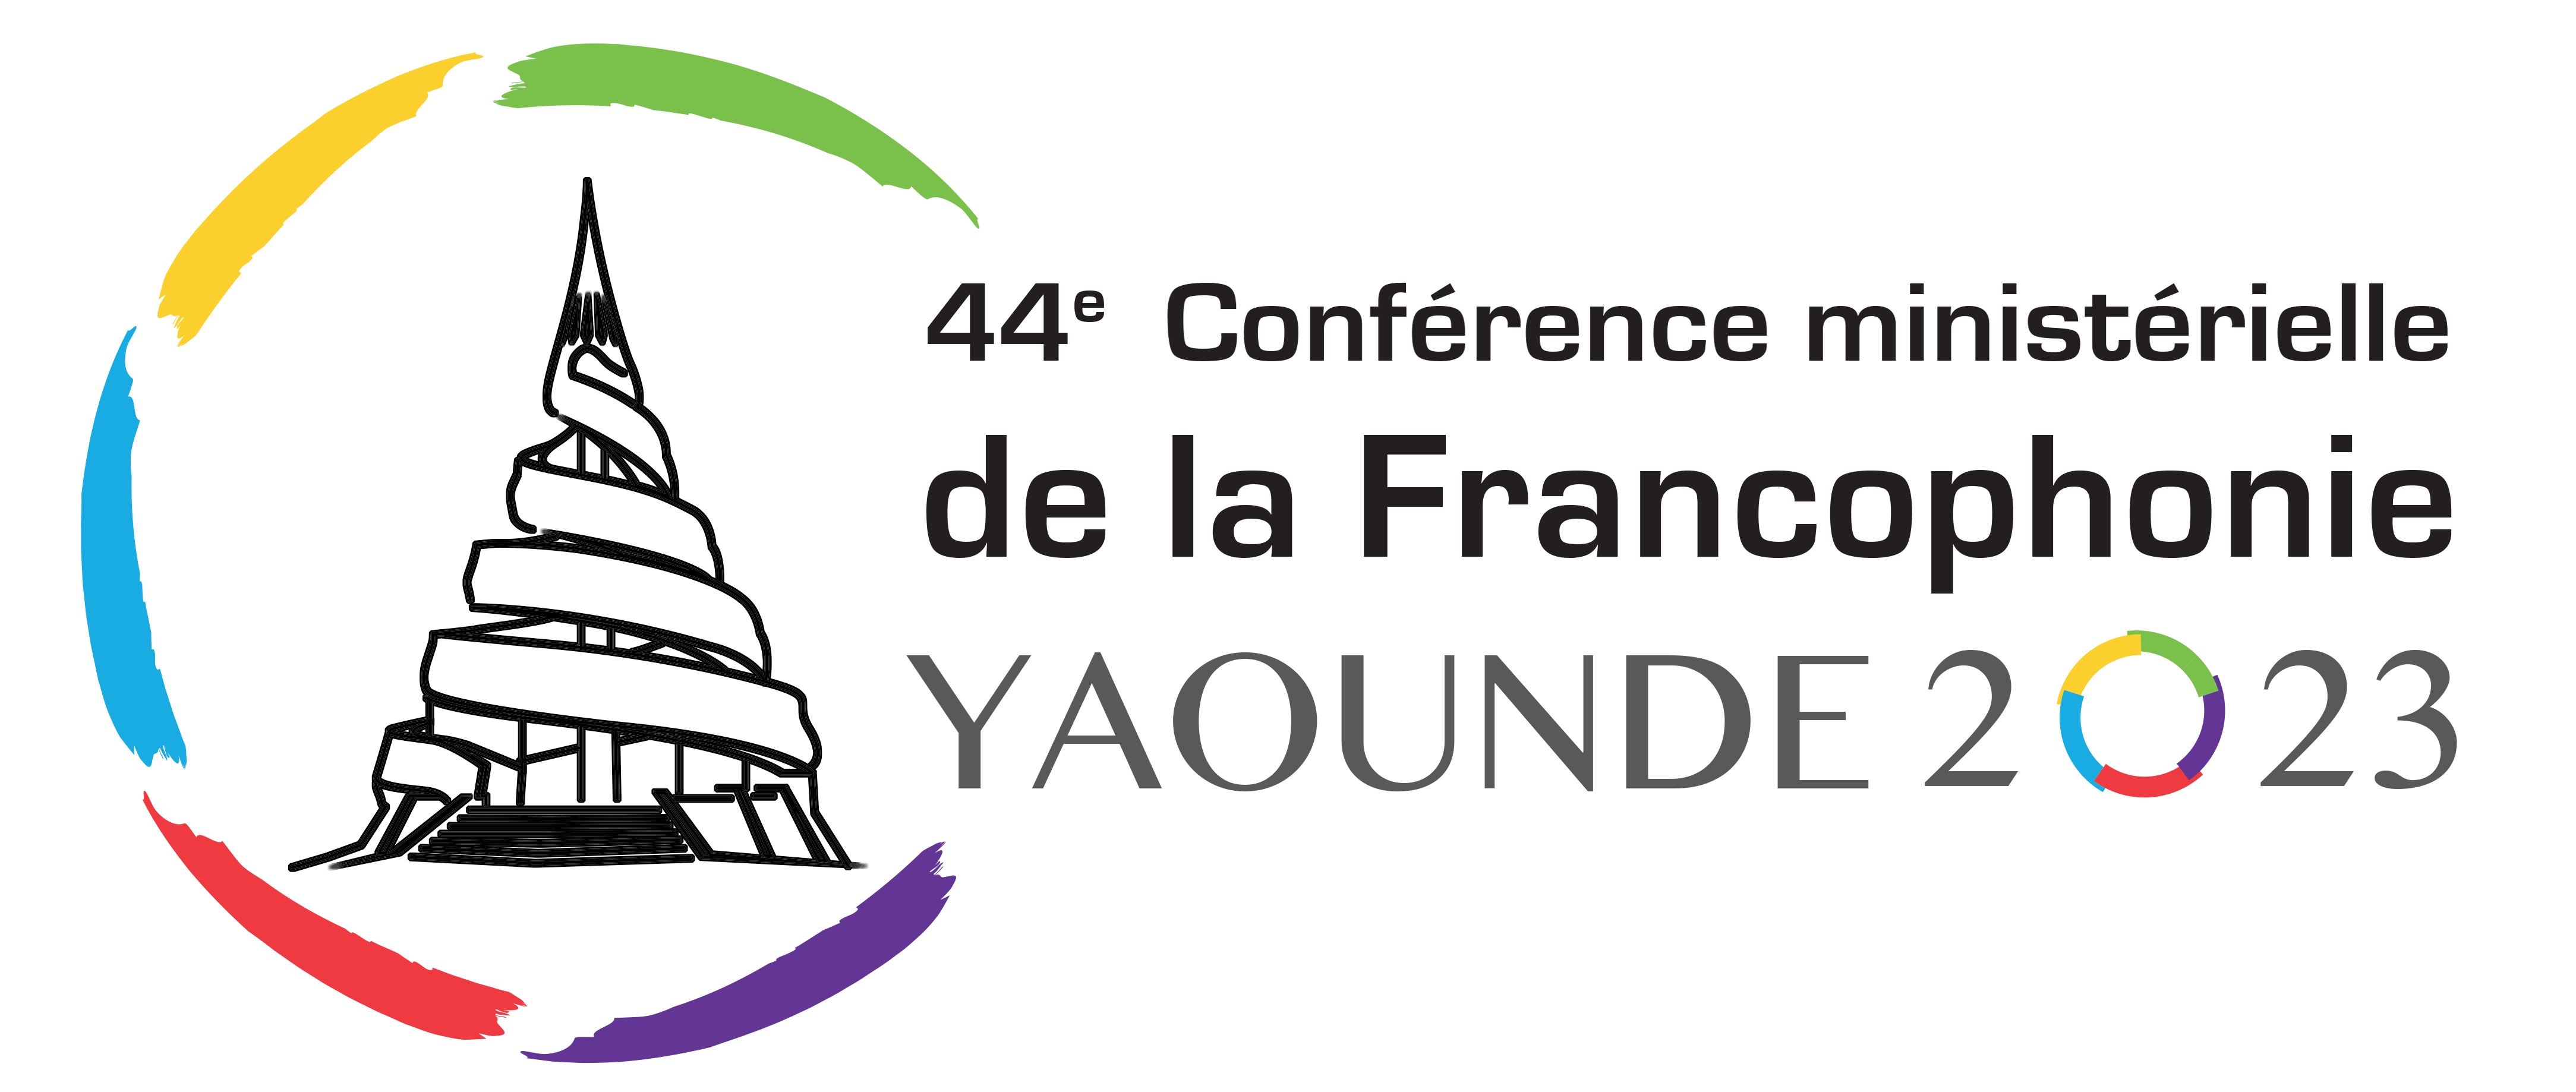 44ème CONFERENCE MINISTERIELLE DE LA FRANCOPHONIE YAOUNDE CAMEROUN 2023